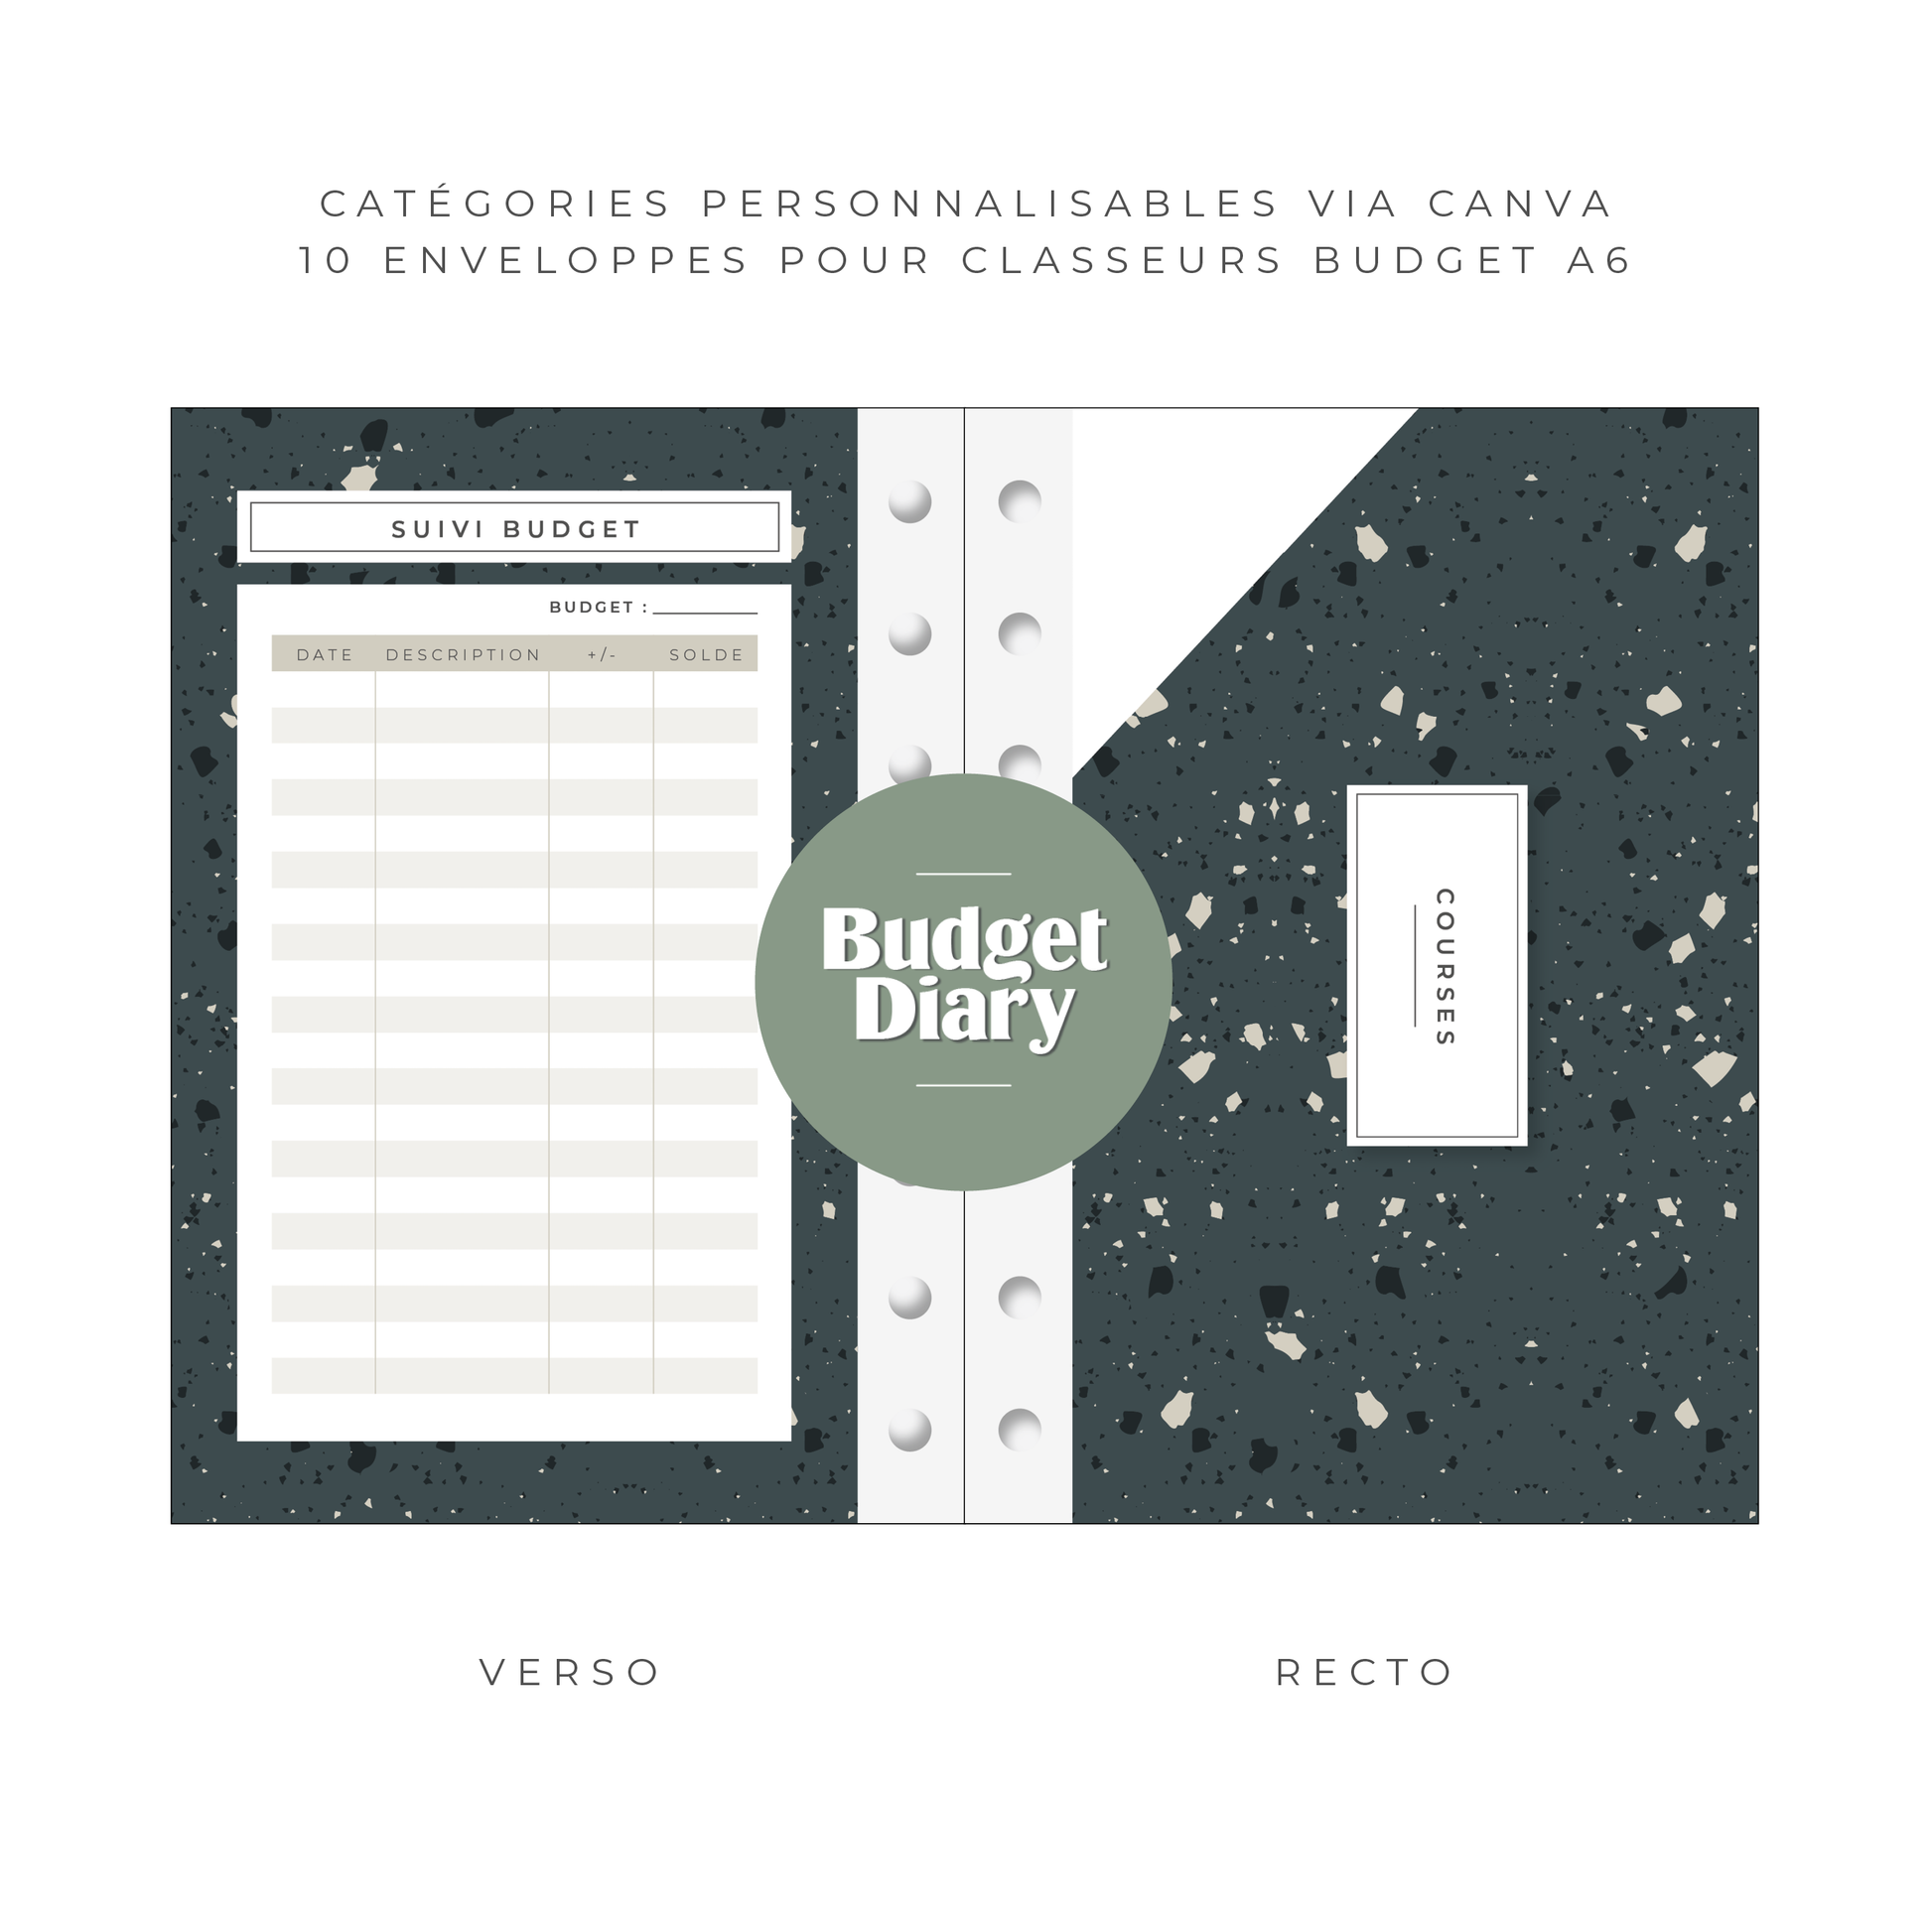 Classeur Budget Avec Enveloppe Budget Classeur A6 Budget Planner